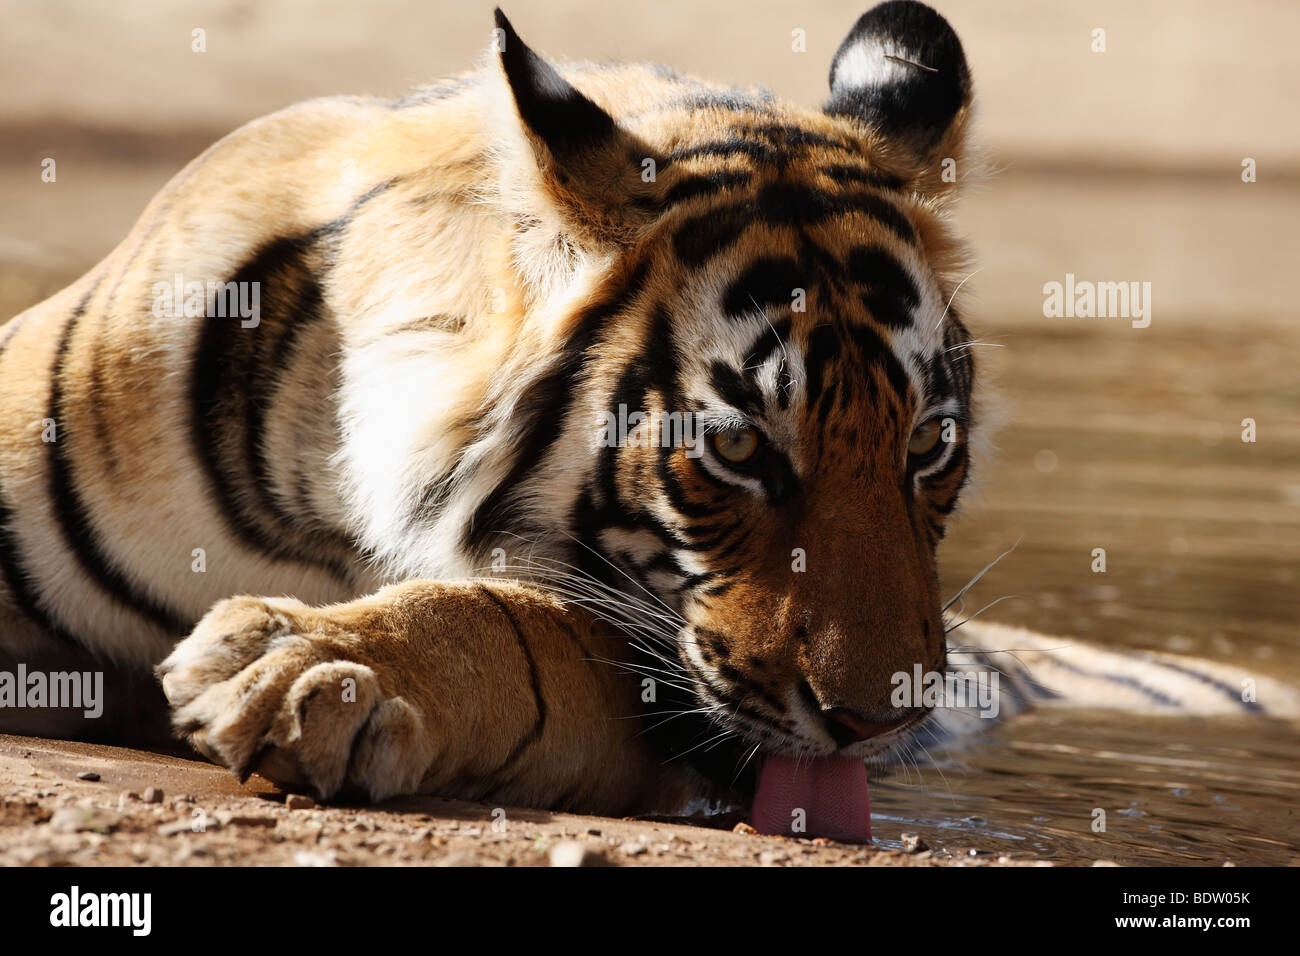 Indischer tiger, koenigstiger, Panthera tigris tigris, indien, asien, royal tigre du Bengale, Inde, Asie Banque D'Images